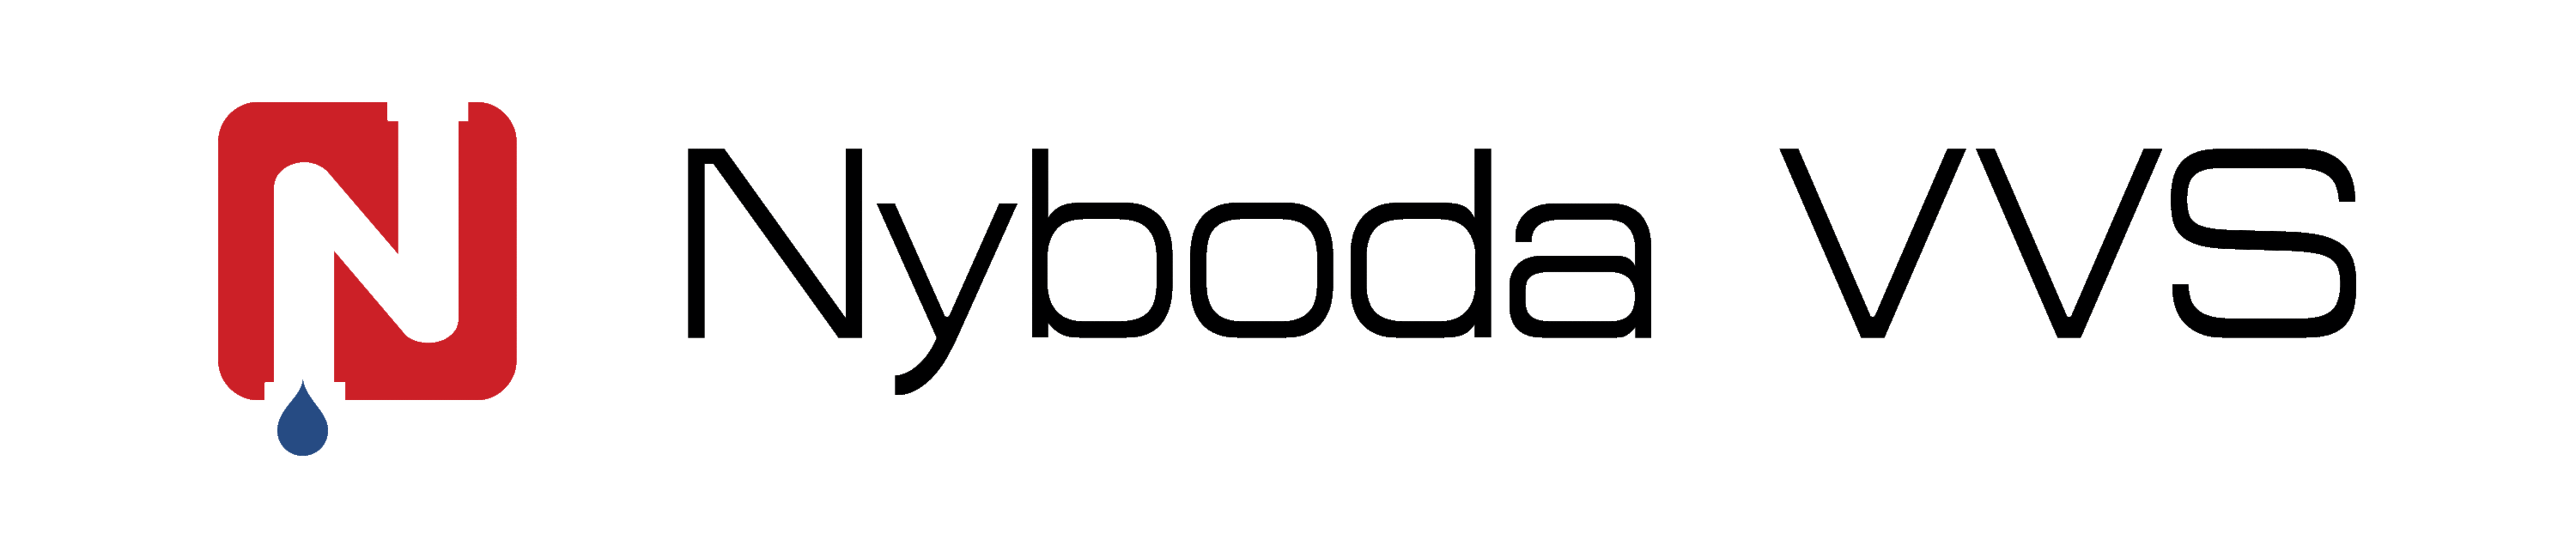 Nyboda Logotyp